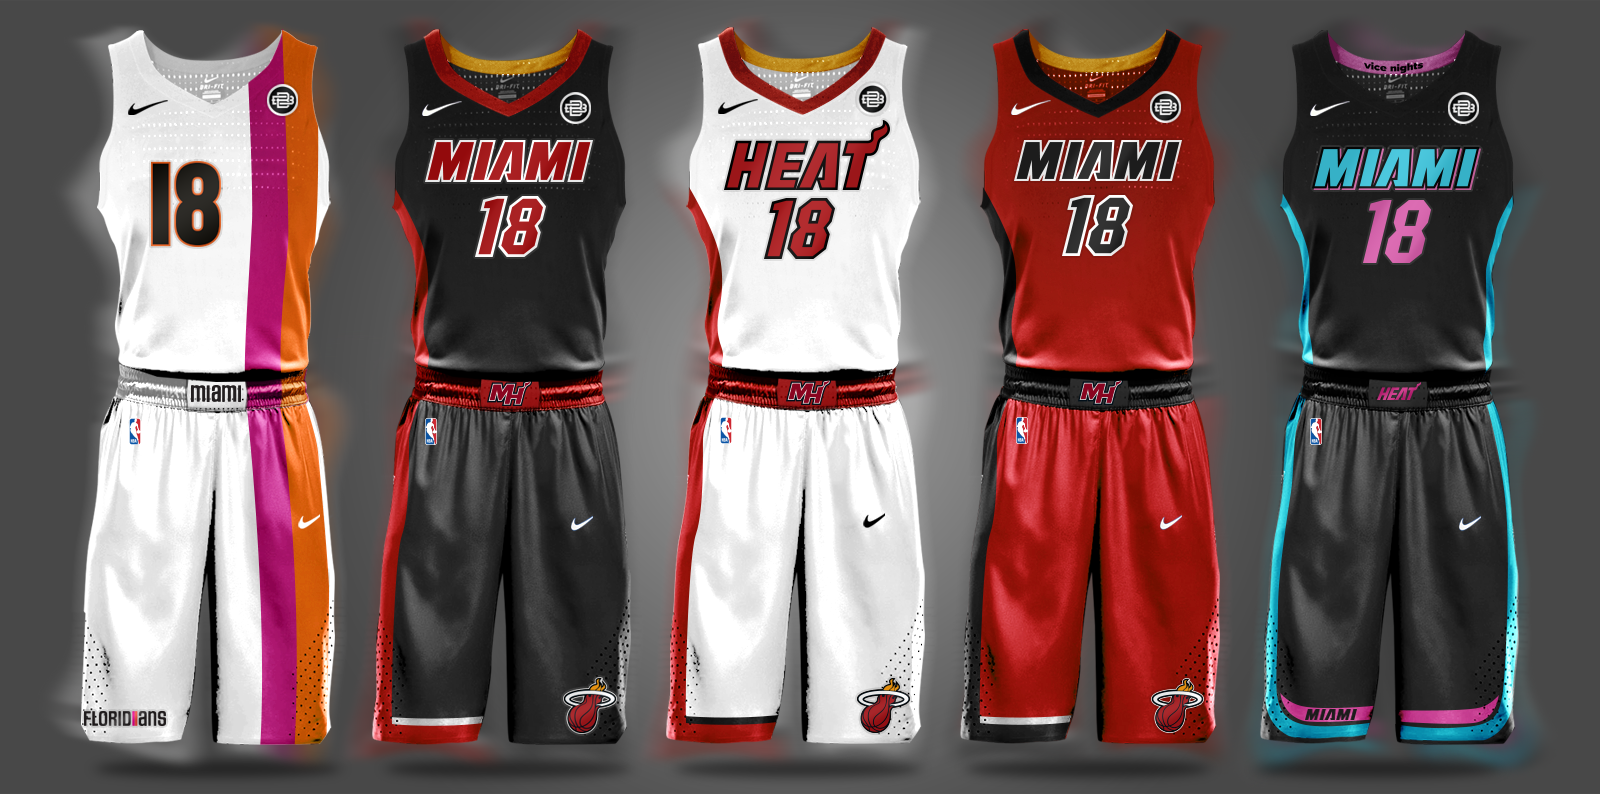 NBA Nike Uniform Concepts - I Am Brian 